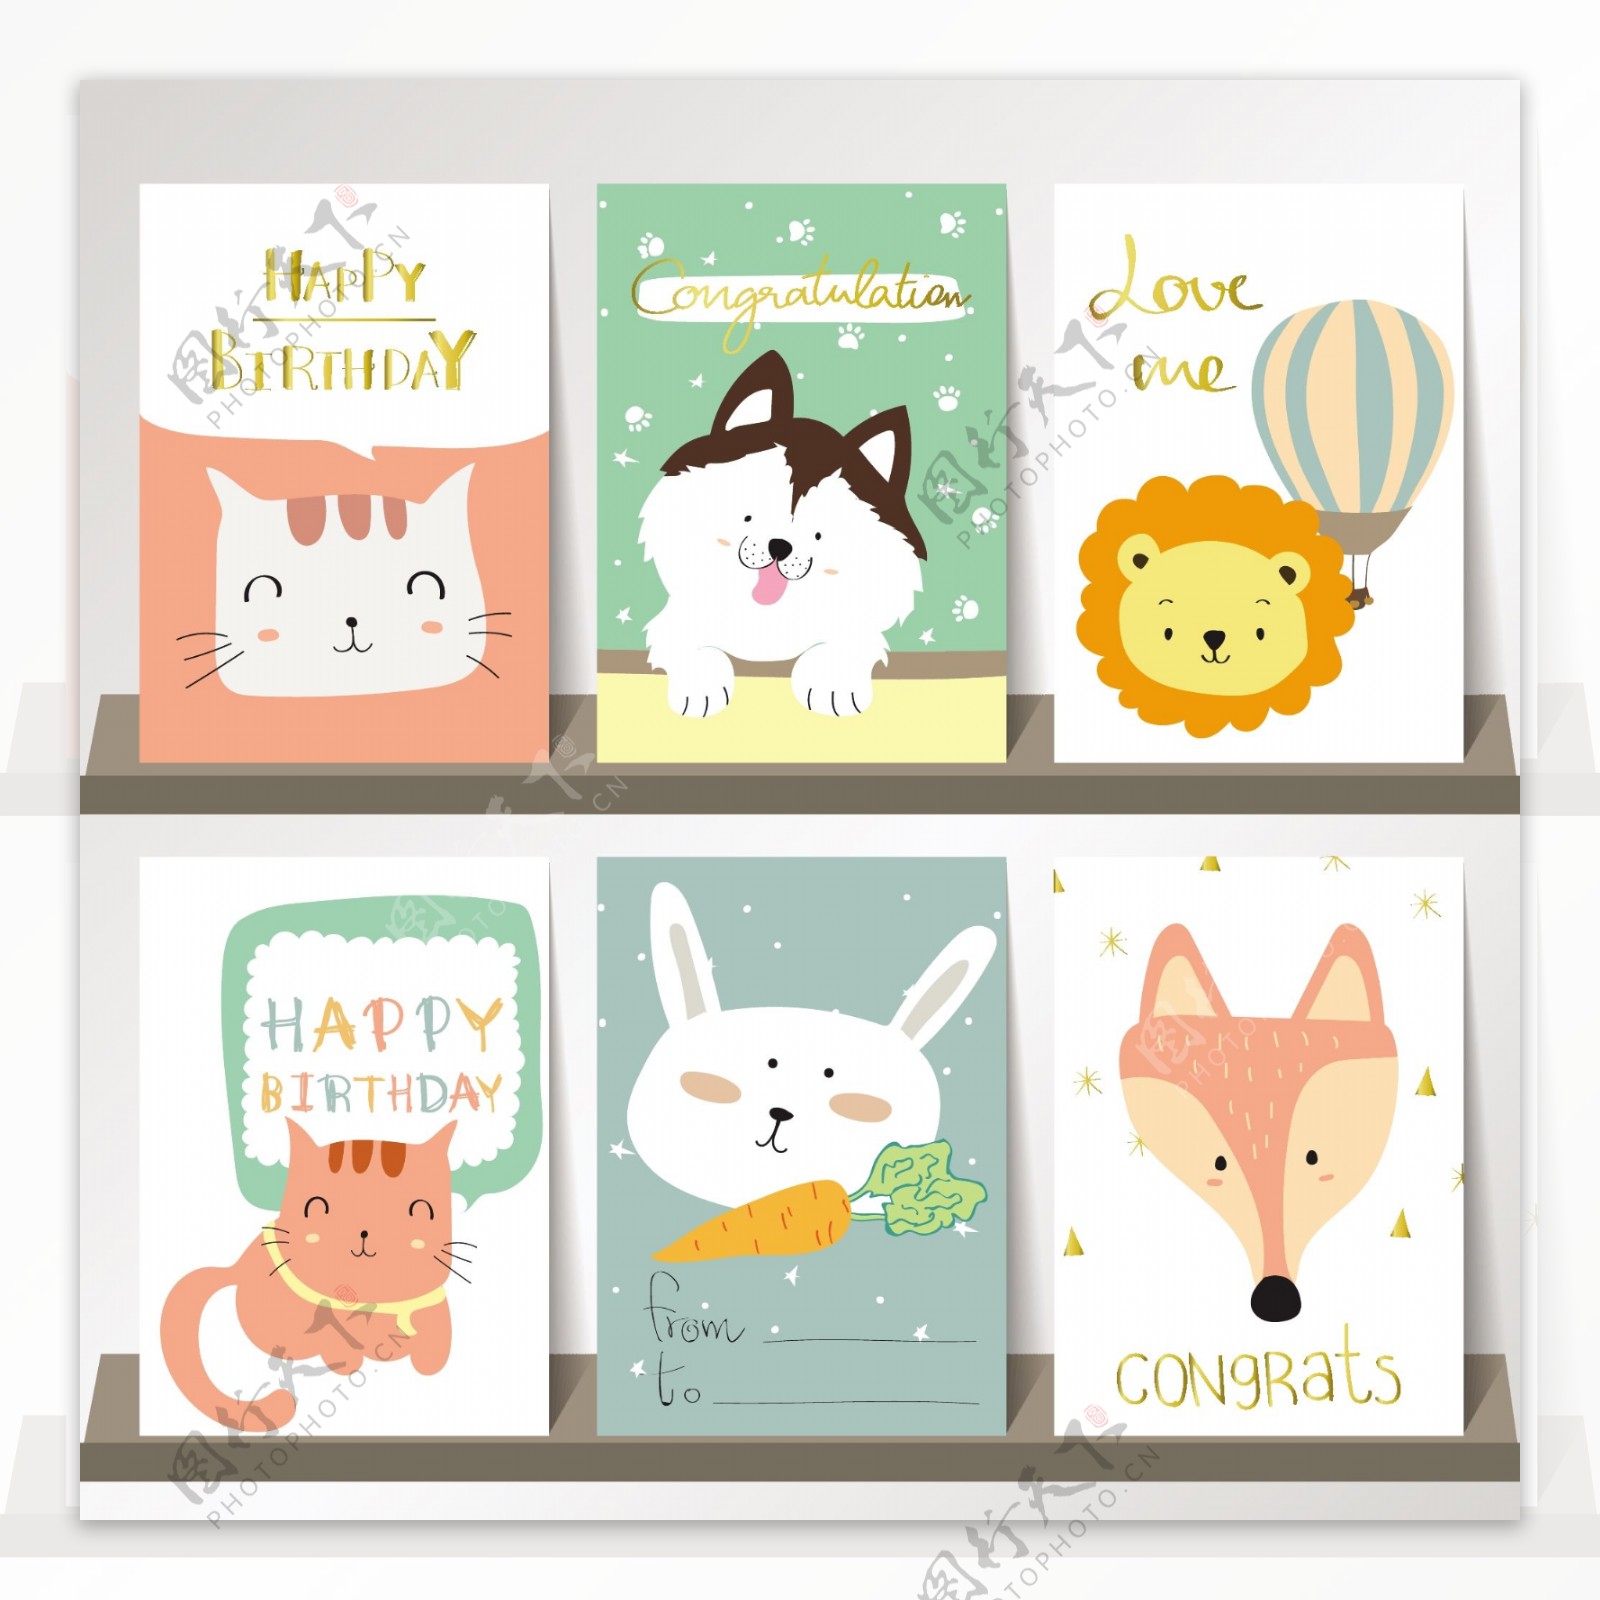 可爱猫咪系列生日快乐海报贺卡矢量素材